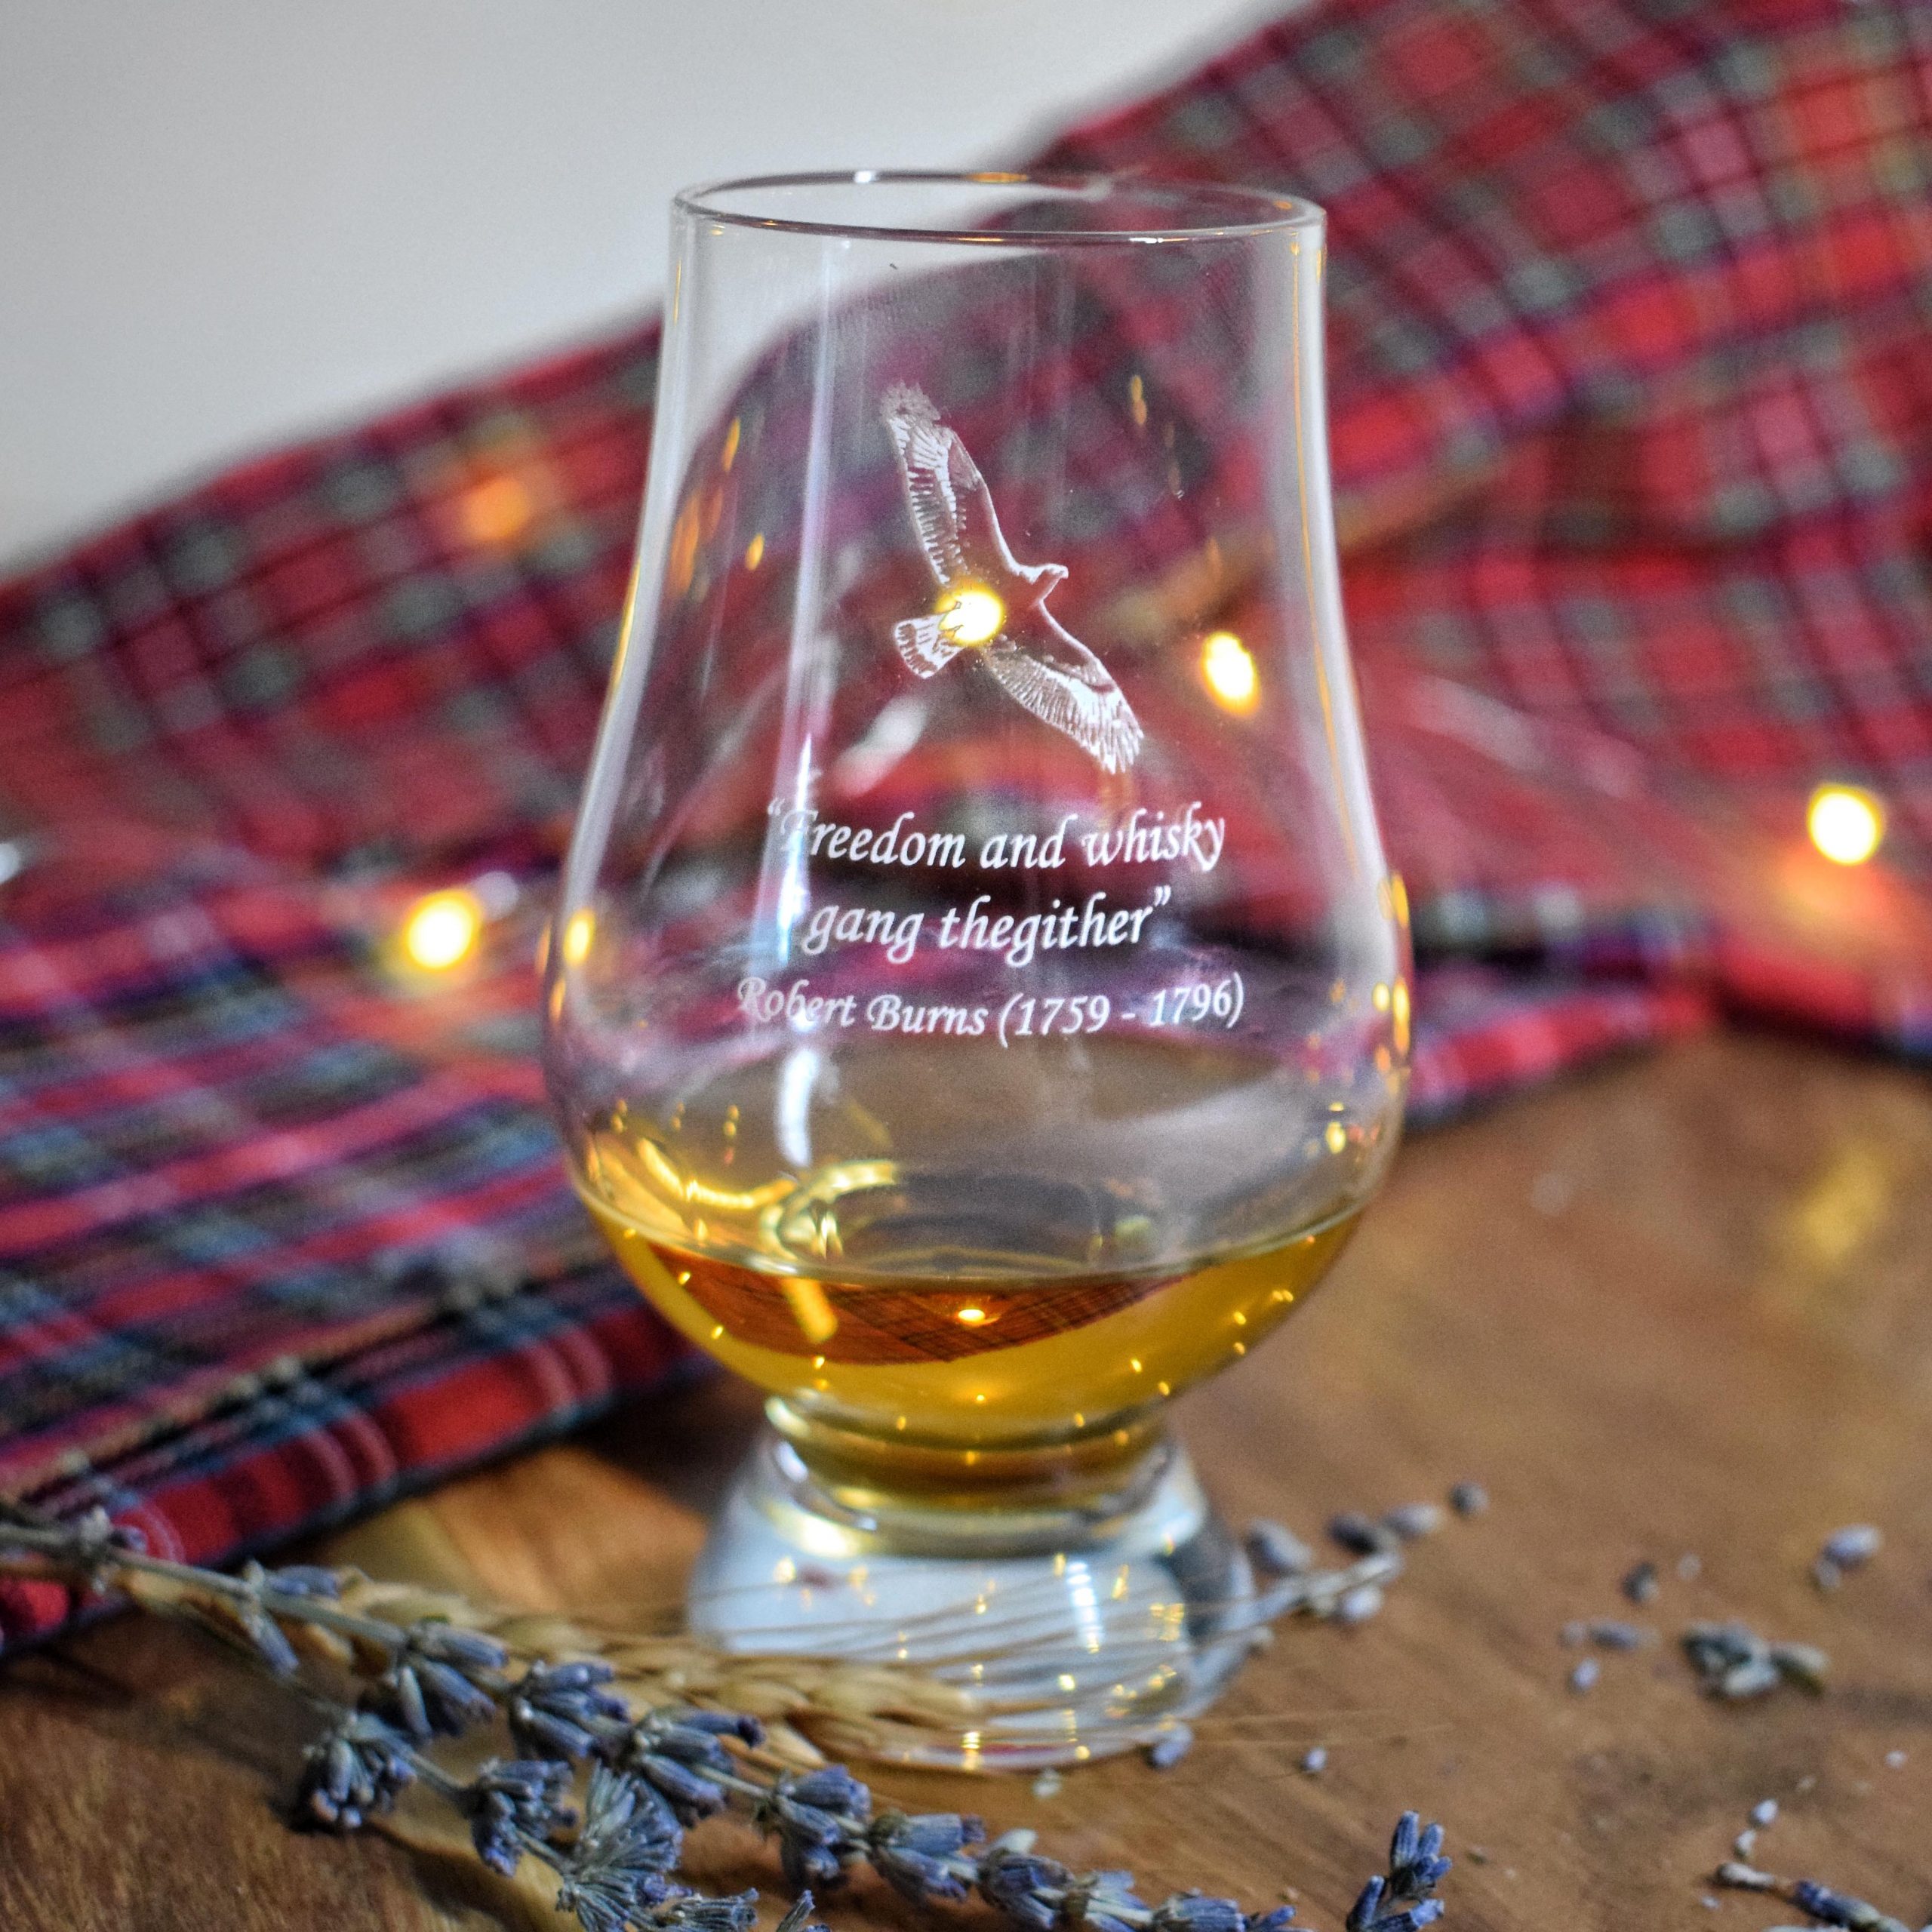 Celtic G Monogram Engraved Glencairn Whisky Glass in Gift Carton 